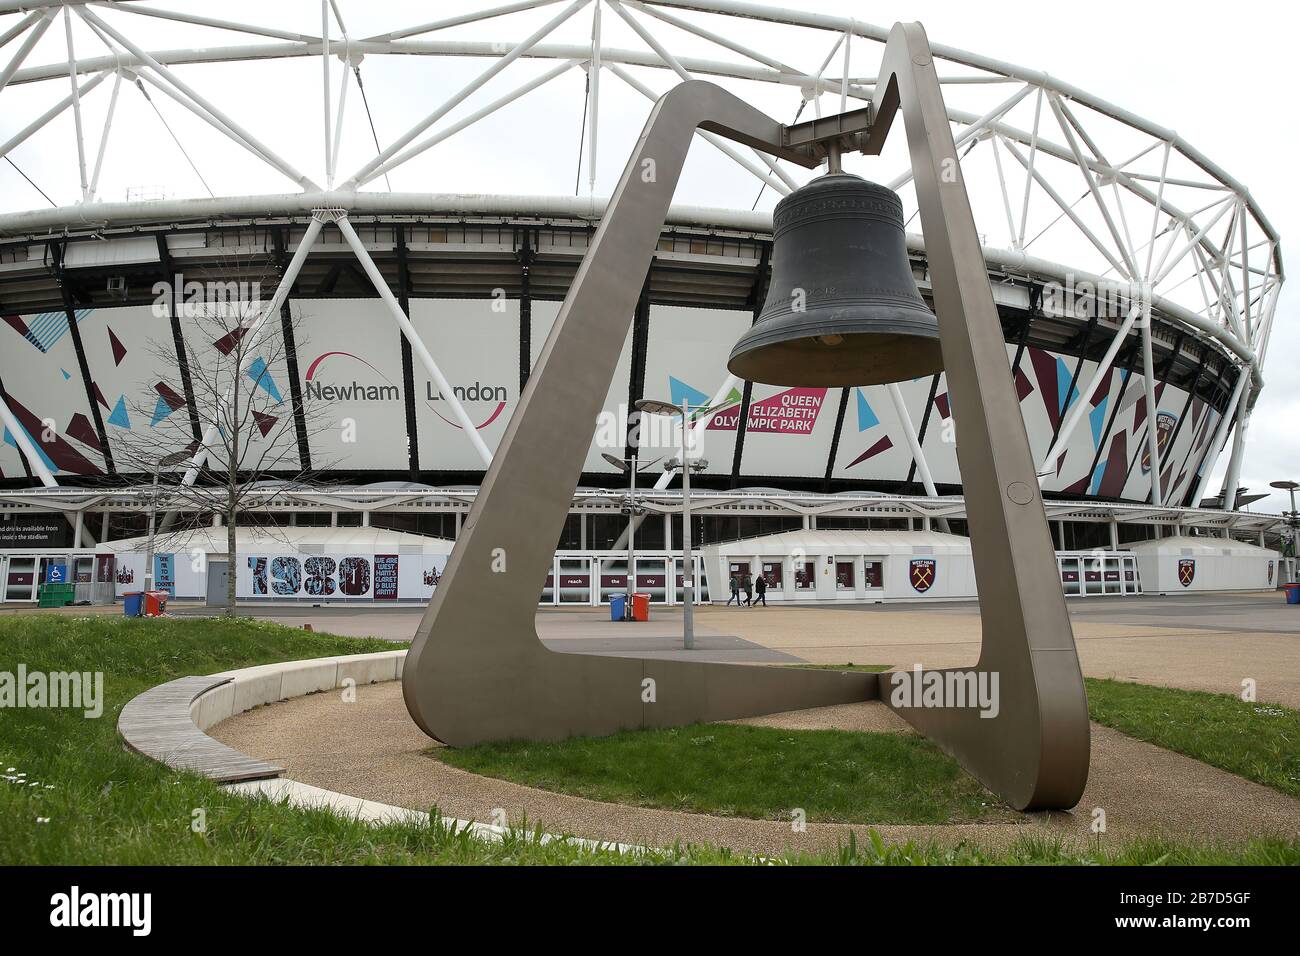 Vue à l'extérieur du London Stadium, stade du West Ham United Football Club, suite à l'annonce de vendredi que la Premier League a suspendu tous les matches jusqu'au samedi 4 avril 2020. Banque D'Images